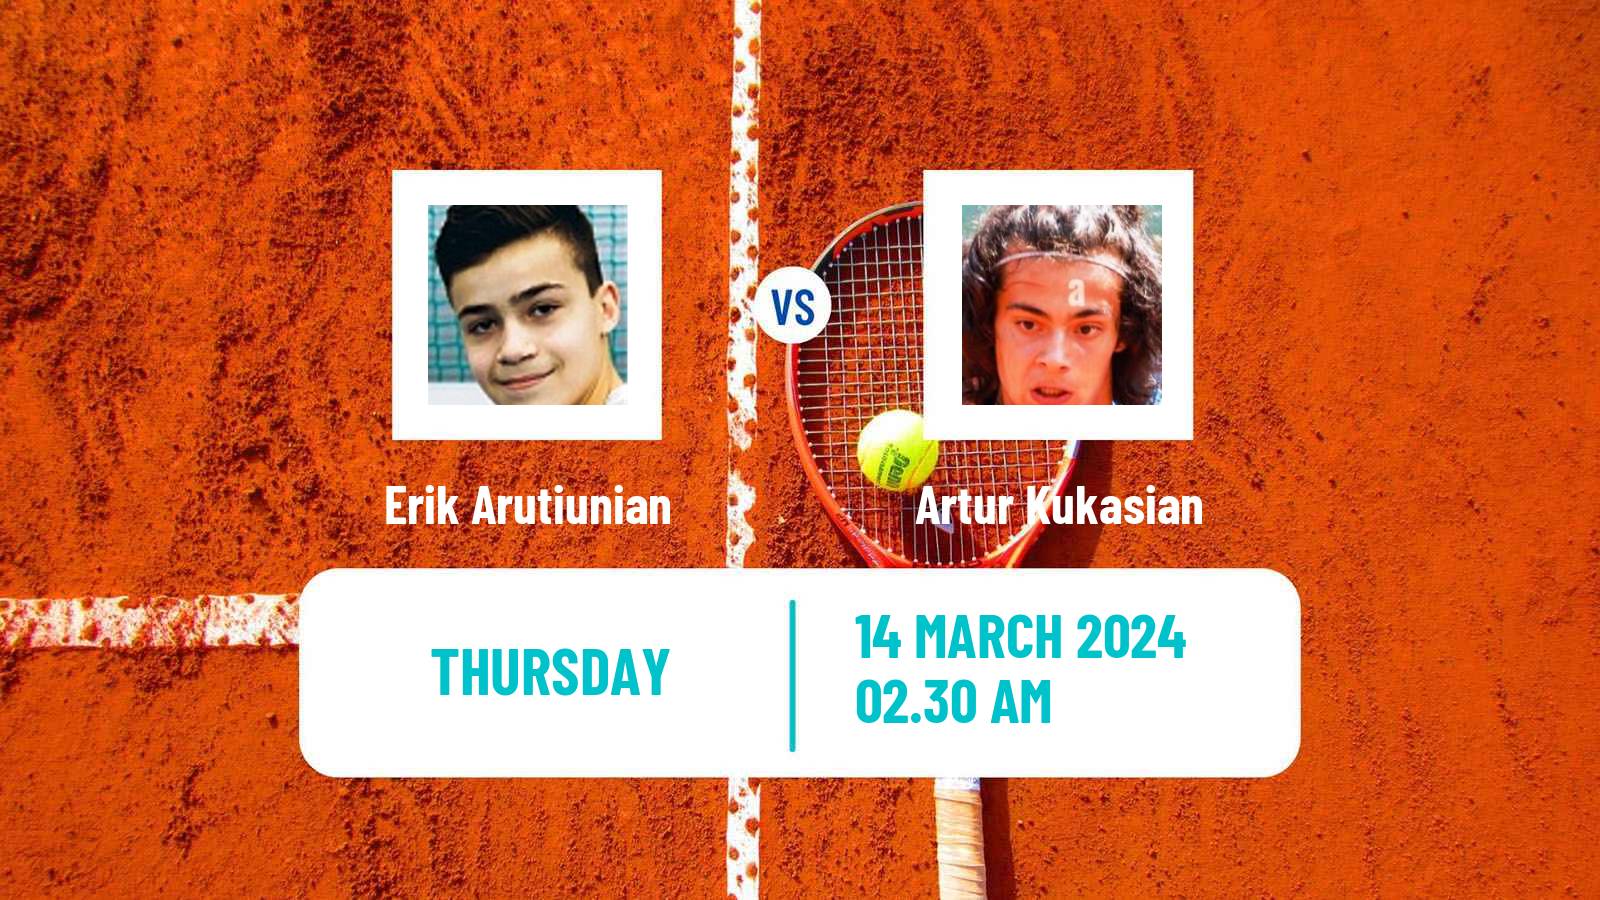 Tennis ITF M15 Aktobe 2 Men Erik Arutiunian - Artur Kukasian